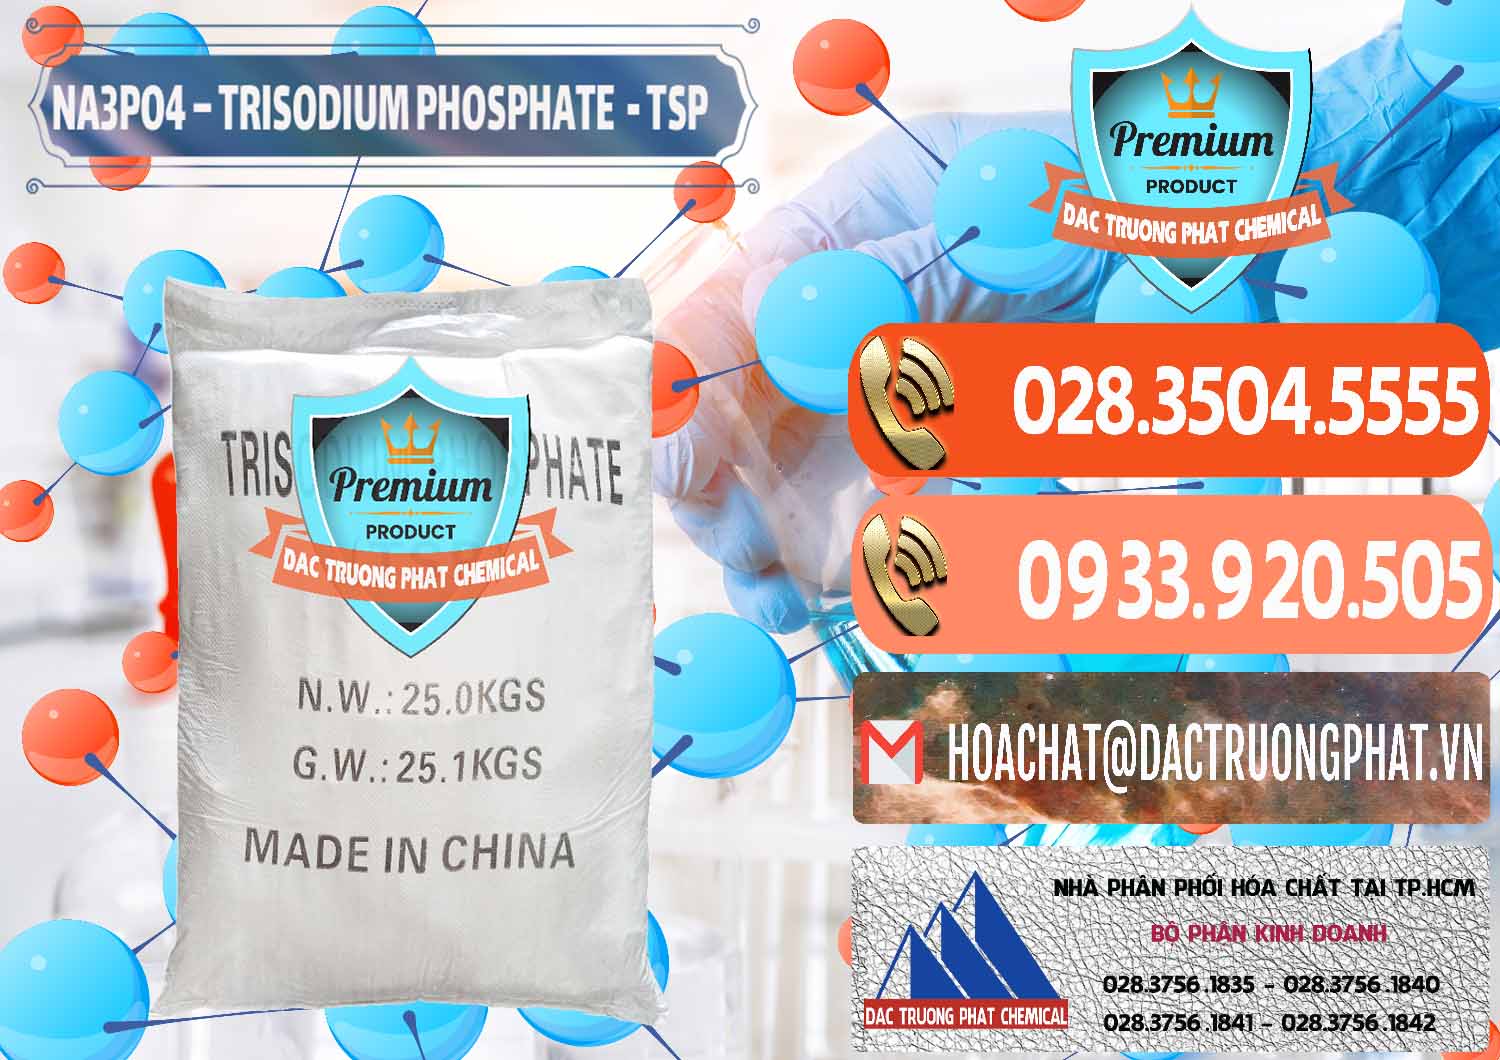 Nơi chuyên bán - cung cấp Na3PO4 – Trisodium Phosphate Trung Quốc China TSP - 0103 - Công ty chuyên kinh doanh và cung cấp hóa chất tại TP.HCM - hoachatmientay.com